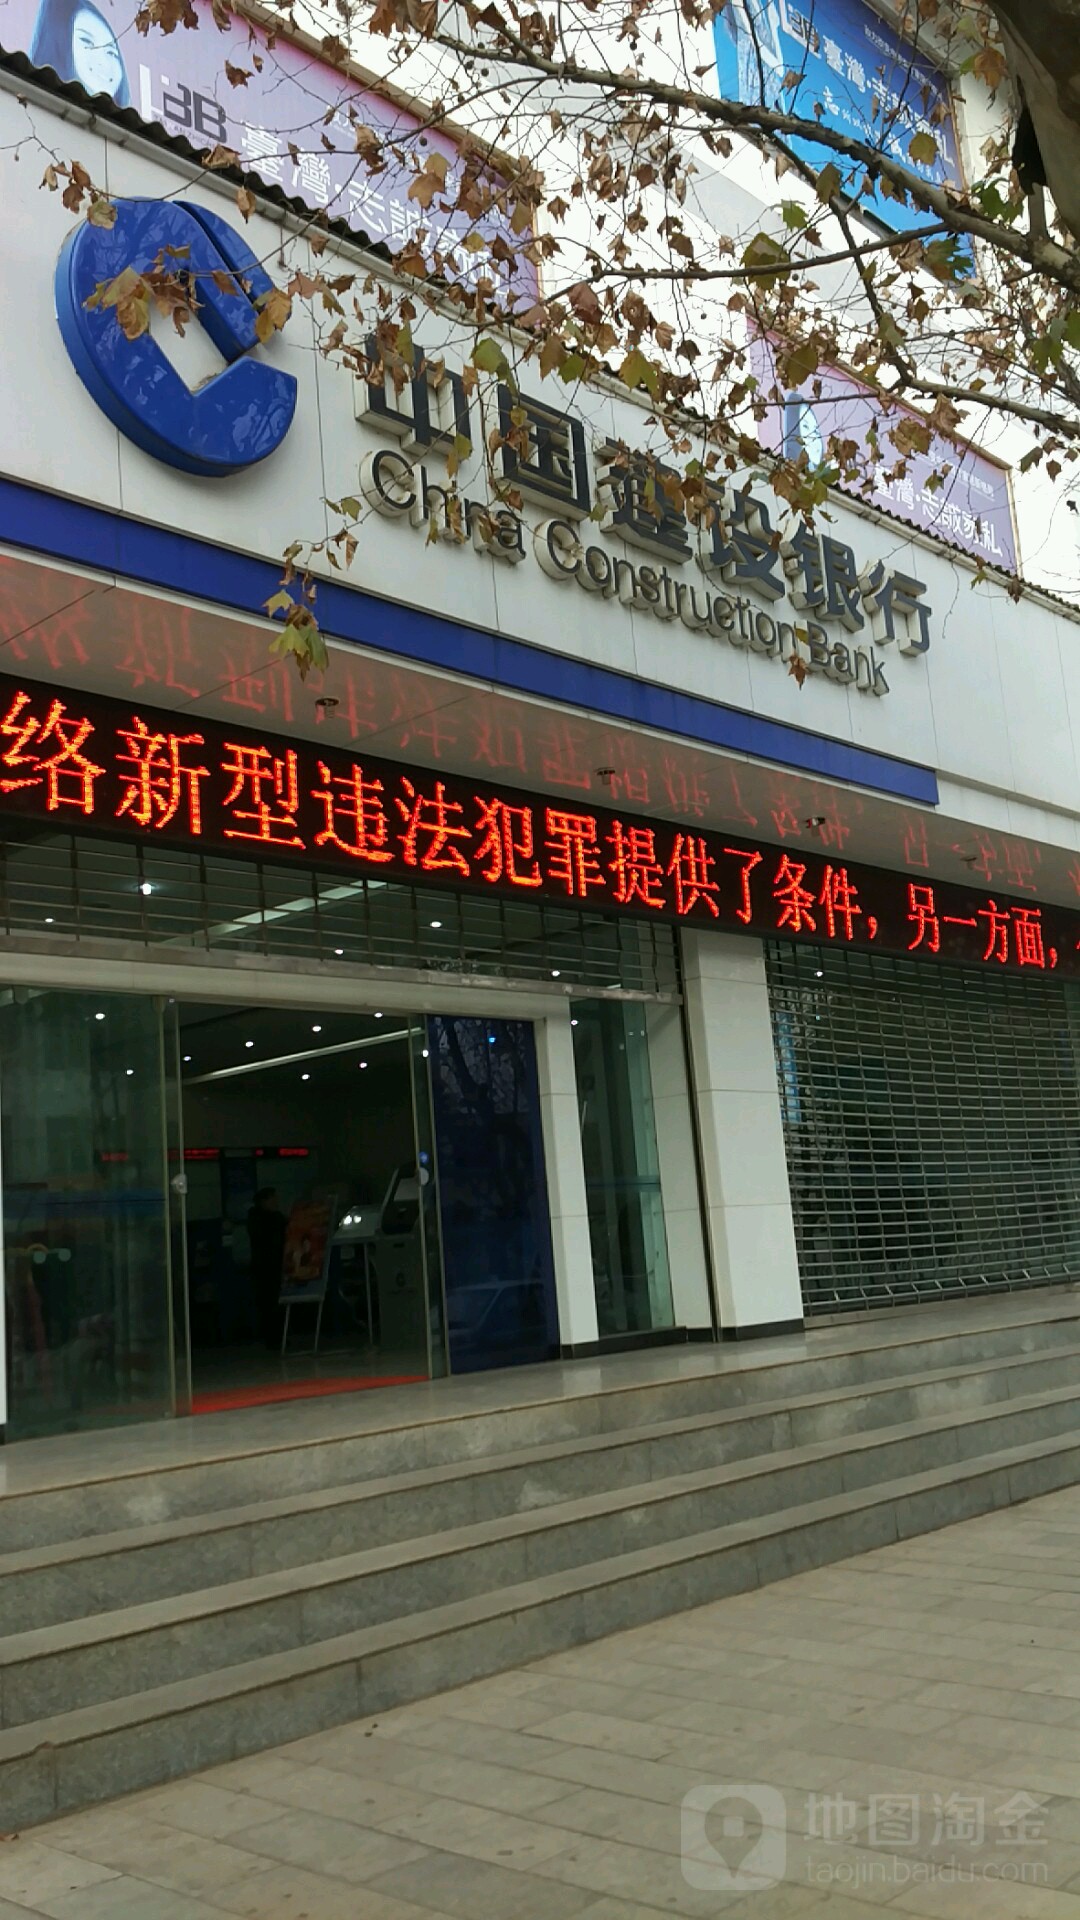 中國建設銀行(振興南段支行)